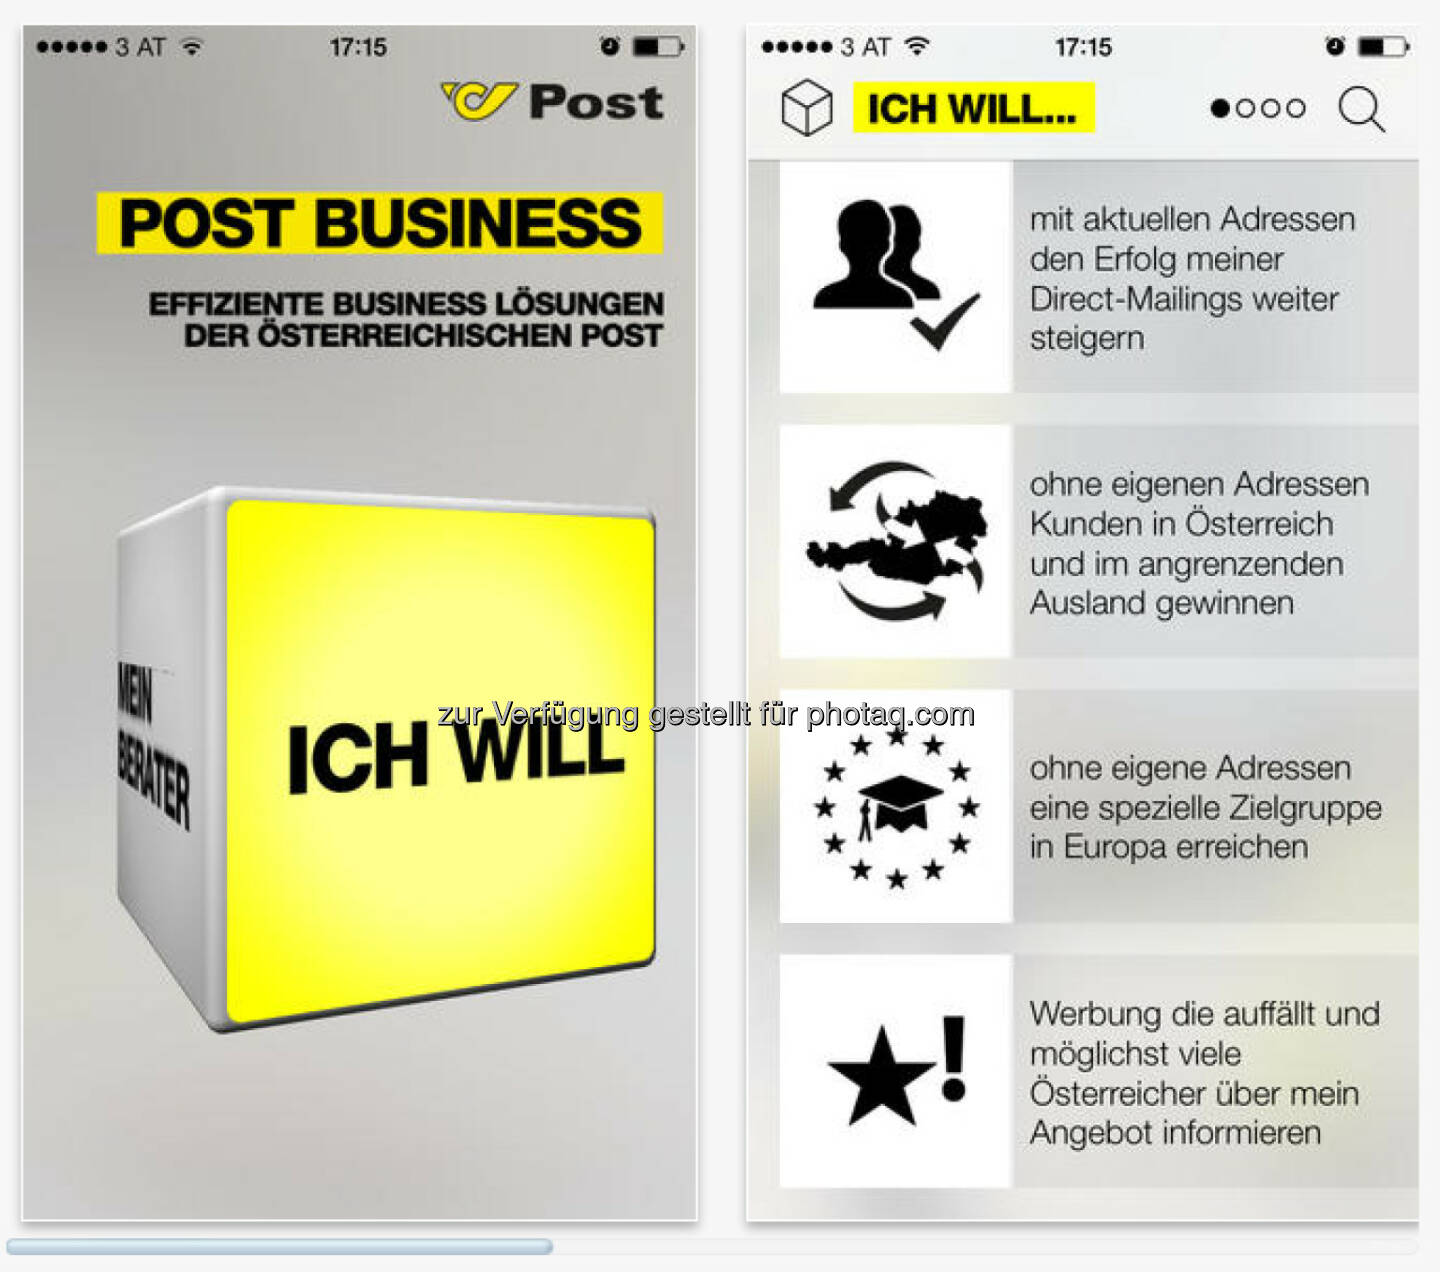 Die Post Business App bietet eine kompakte und leicht verständliche Übersicht über das Werbepost Produktportfolio und Mail Solutions.